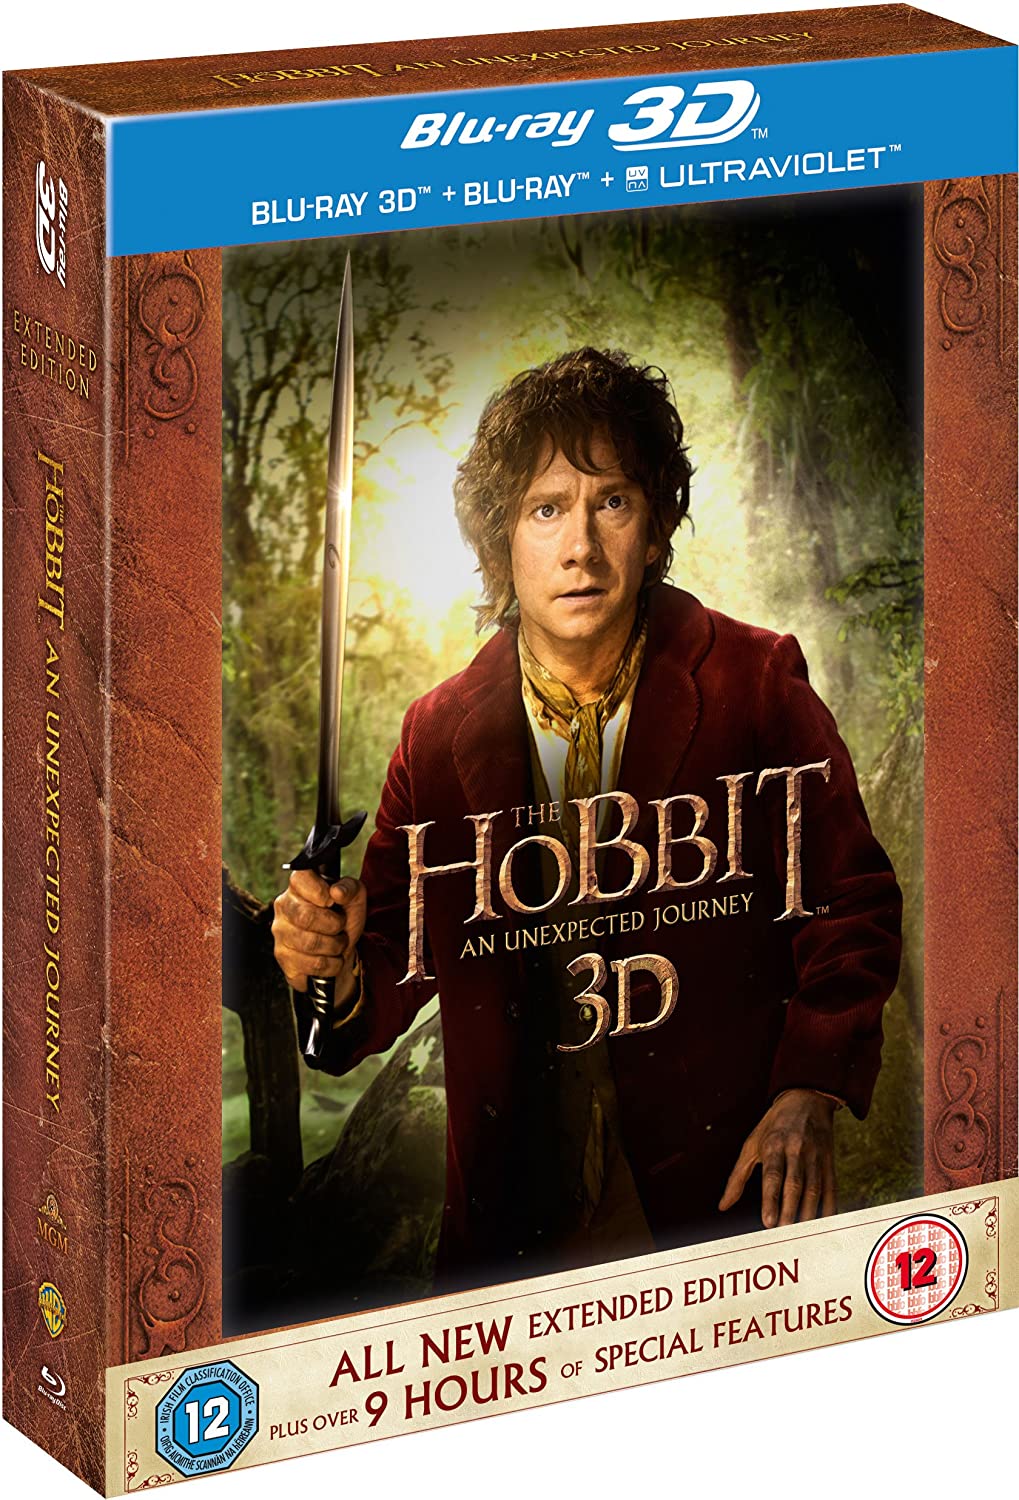 Der Hobbit: Eine unerwartete Reise - Extended Edition [Blu-ray 3D + Blu-ray] [201